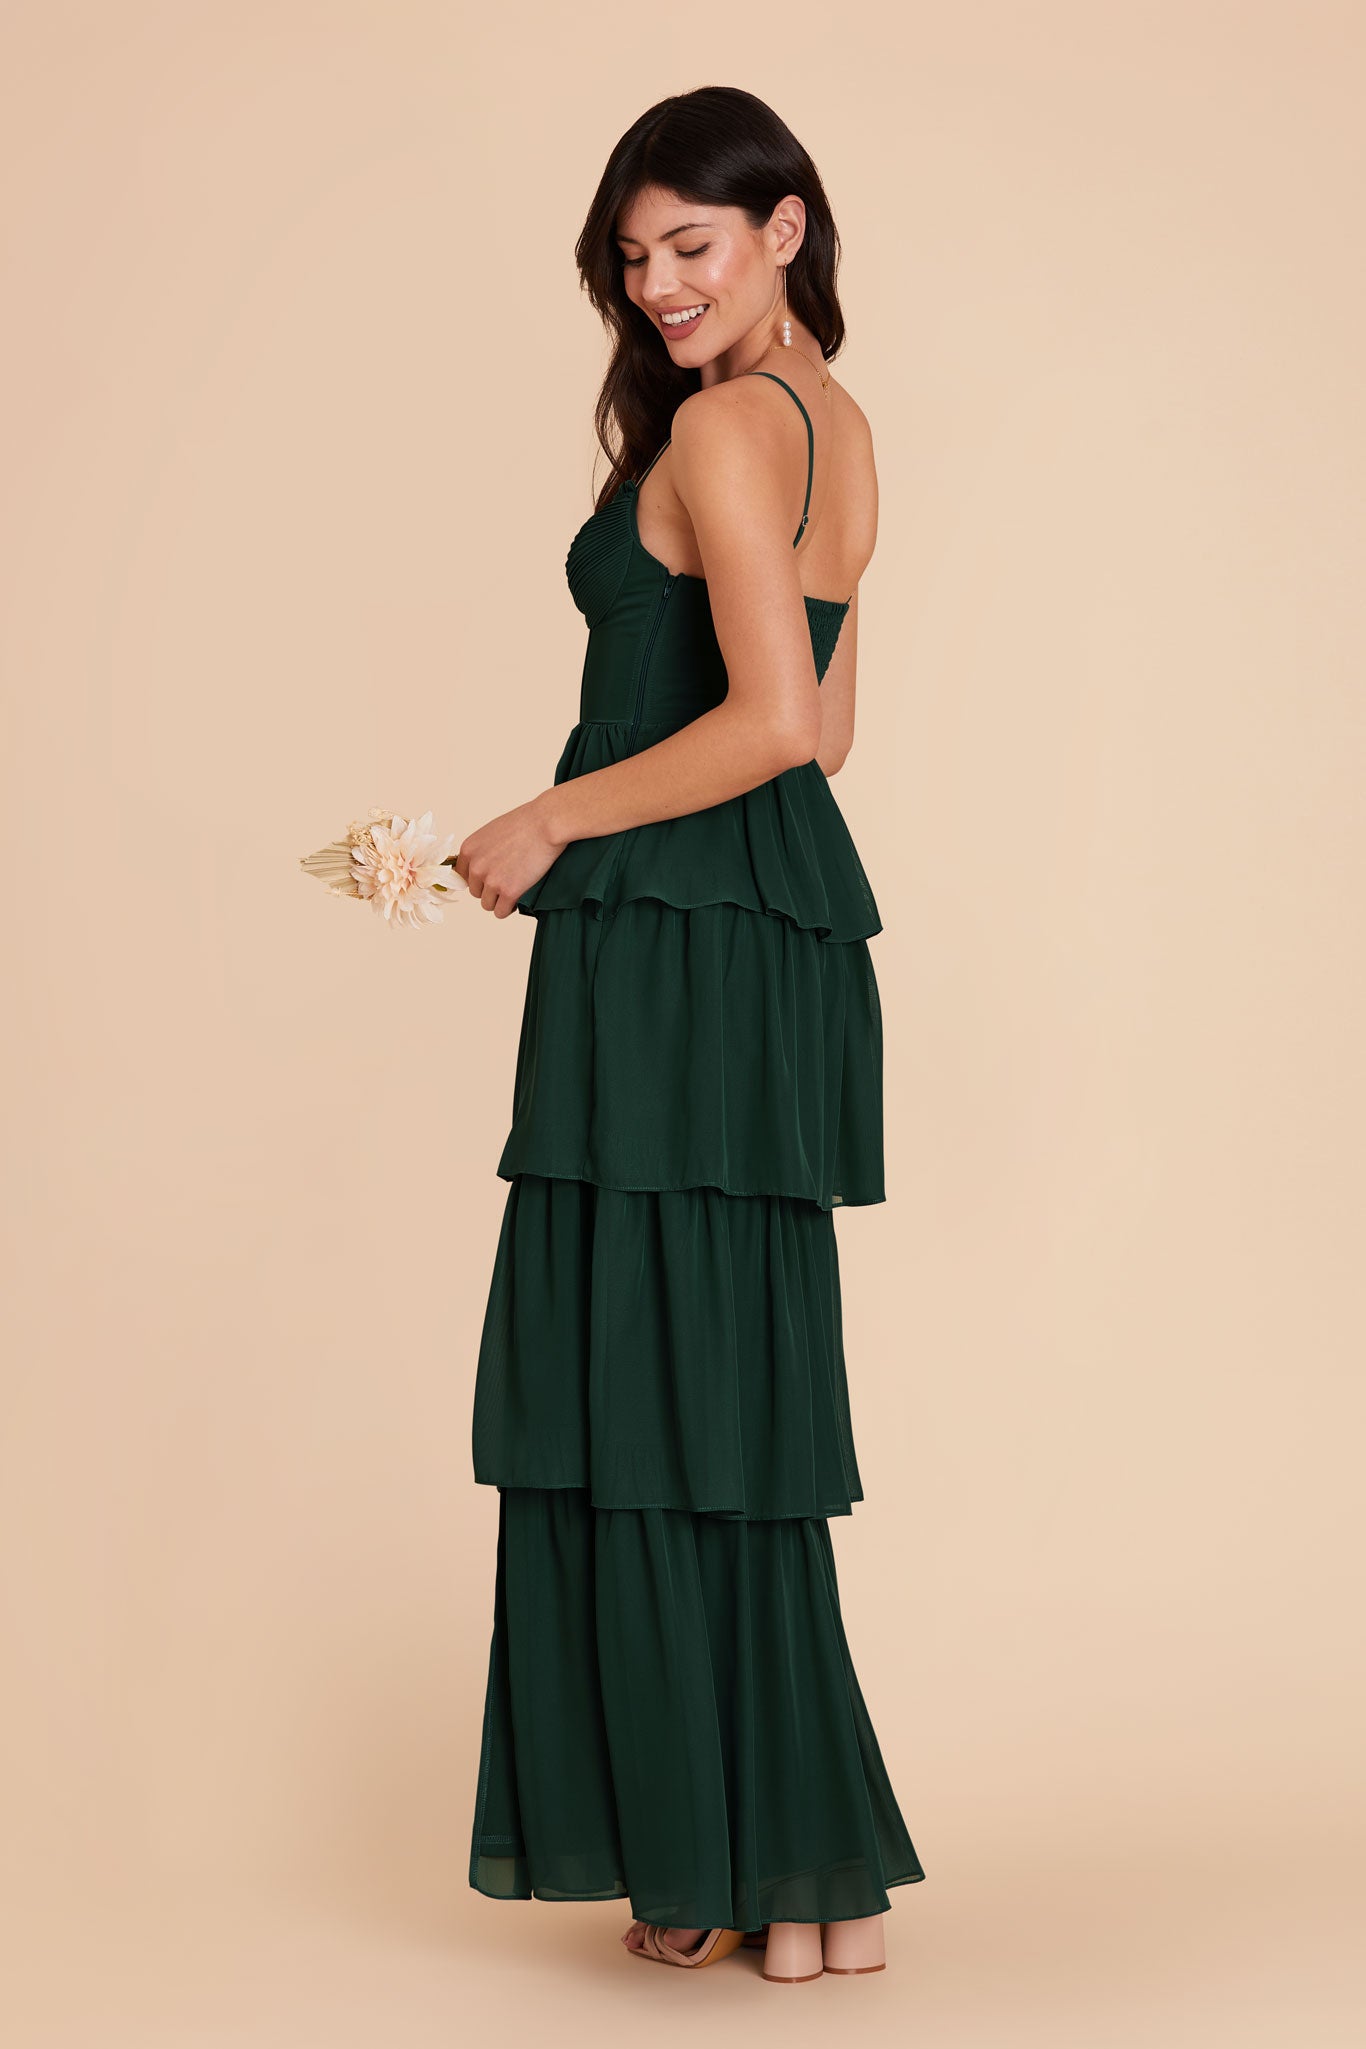 Emerald Lola Chiffon Dress by Birdy Grey